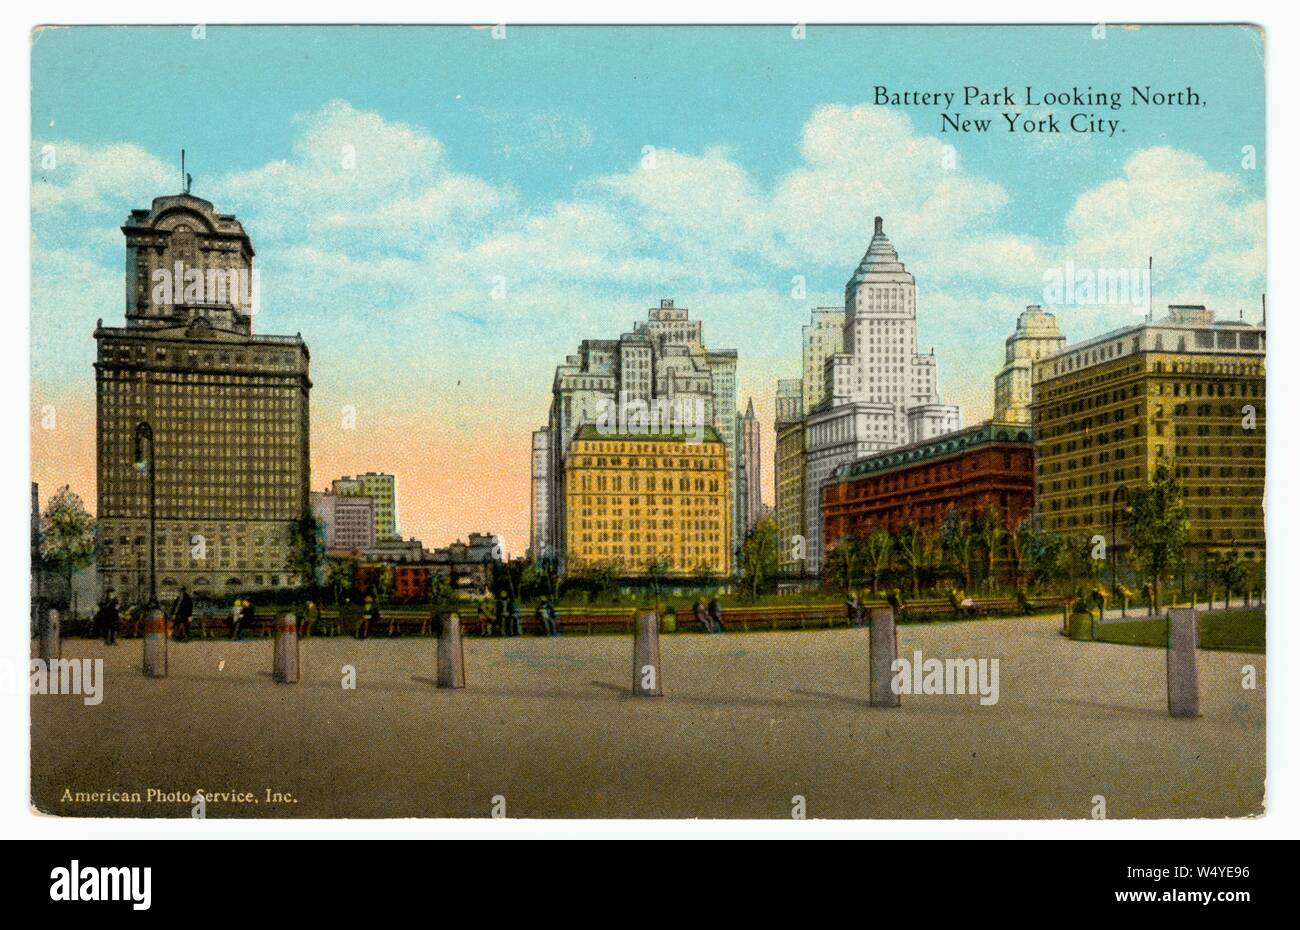 Carte postale gravé du parc de batterie à la nord, la pointe sud de l'île de Manhattan à New York City, New York, publié par Manhattan Post Card Co, 1915. À partir de la Bibliothèque publique de New York. () Banque D'Images